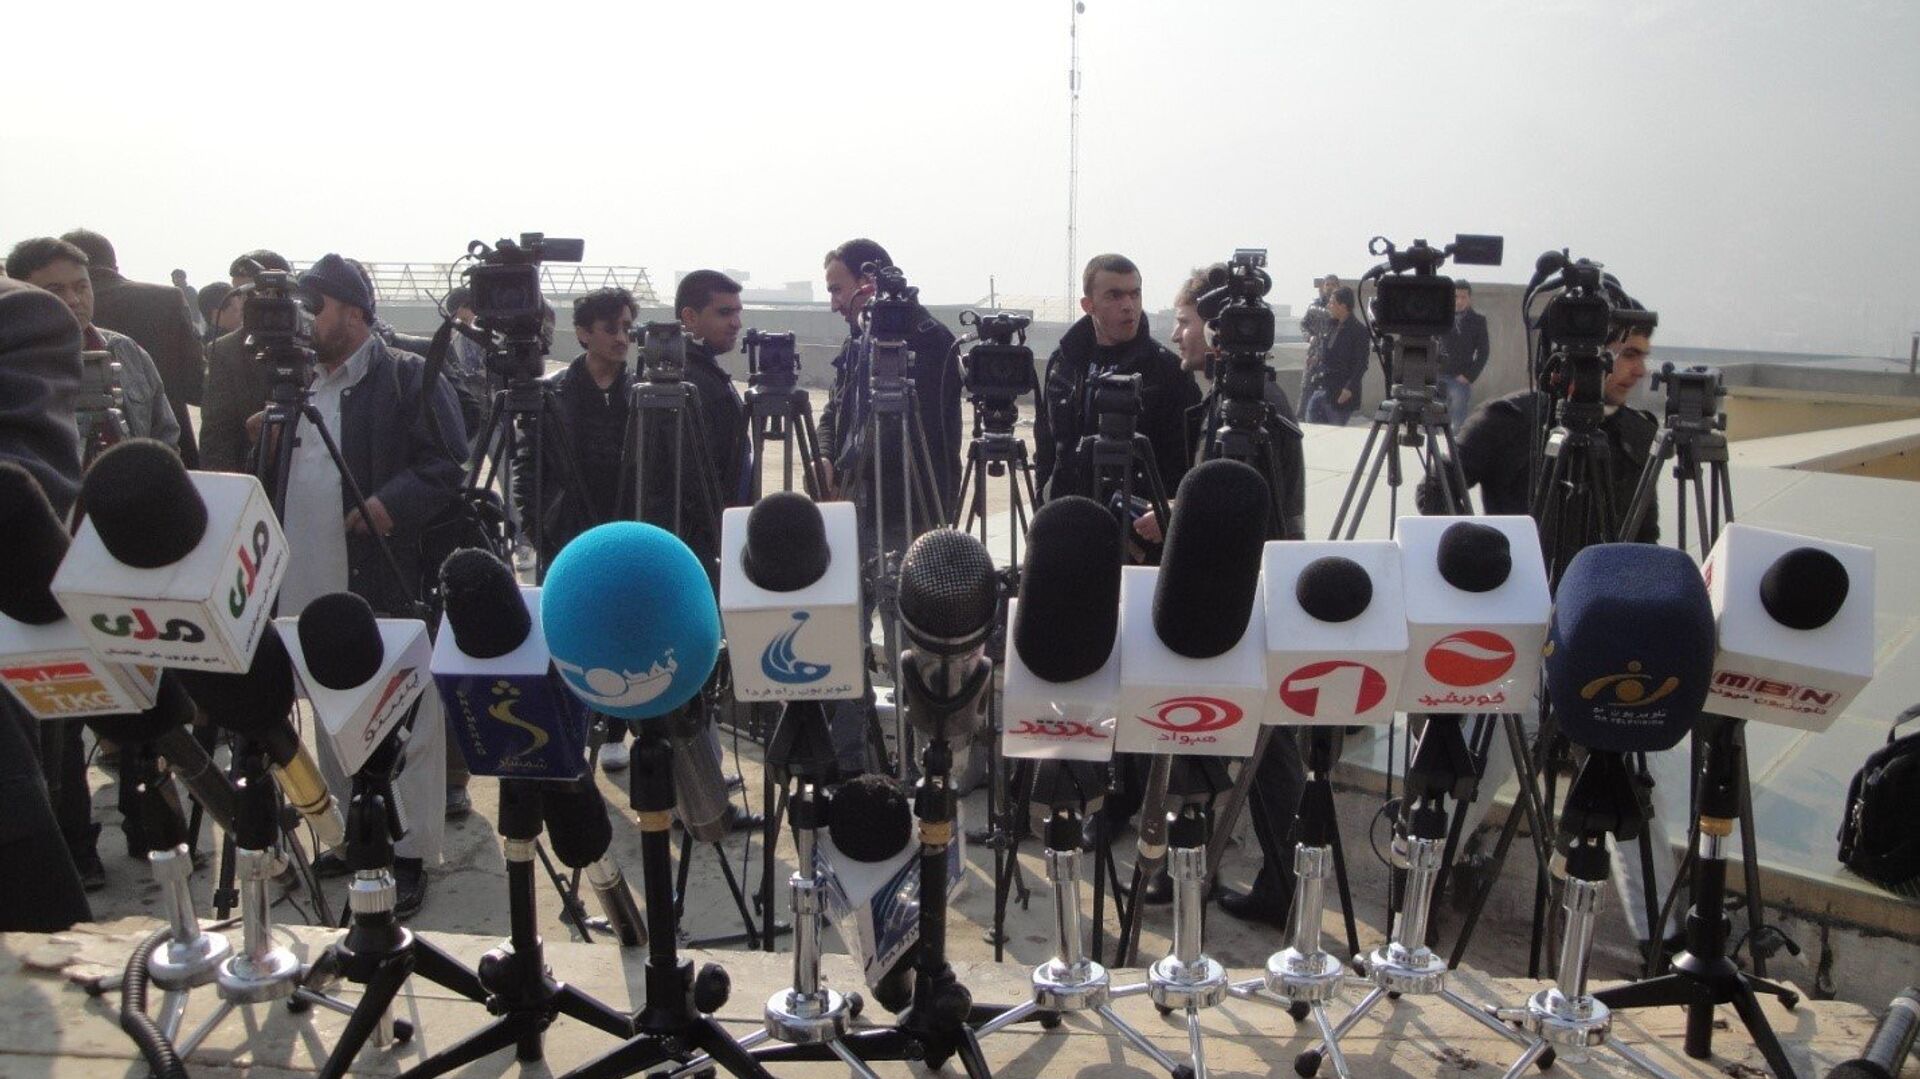 گزارش تازه‌ فدراسیون بین‌المللی خبرنگاران از وضعیت آزادی بیان در افغانستان